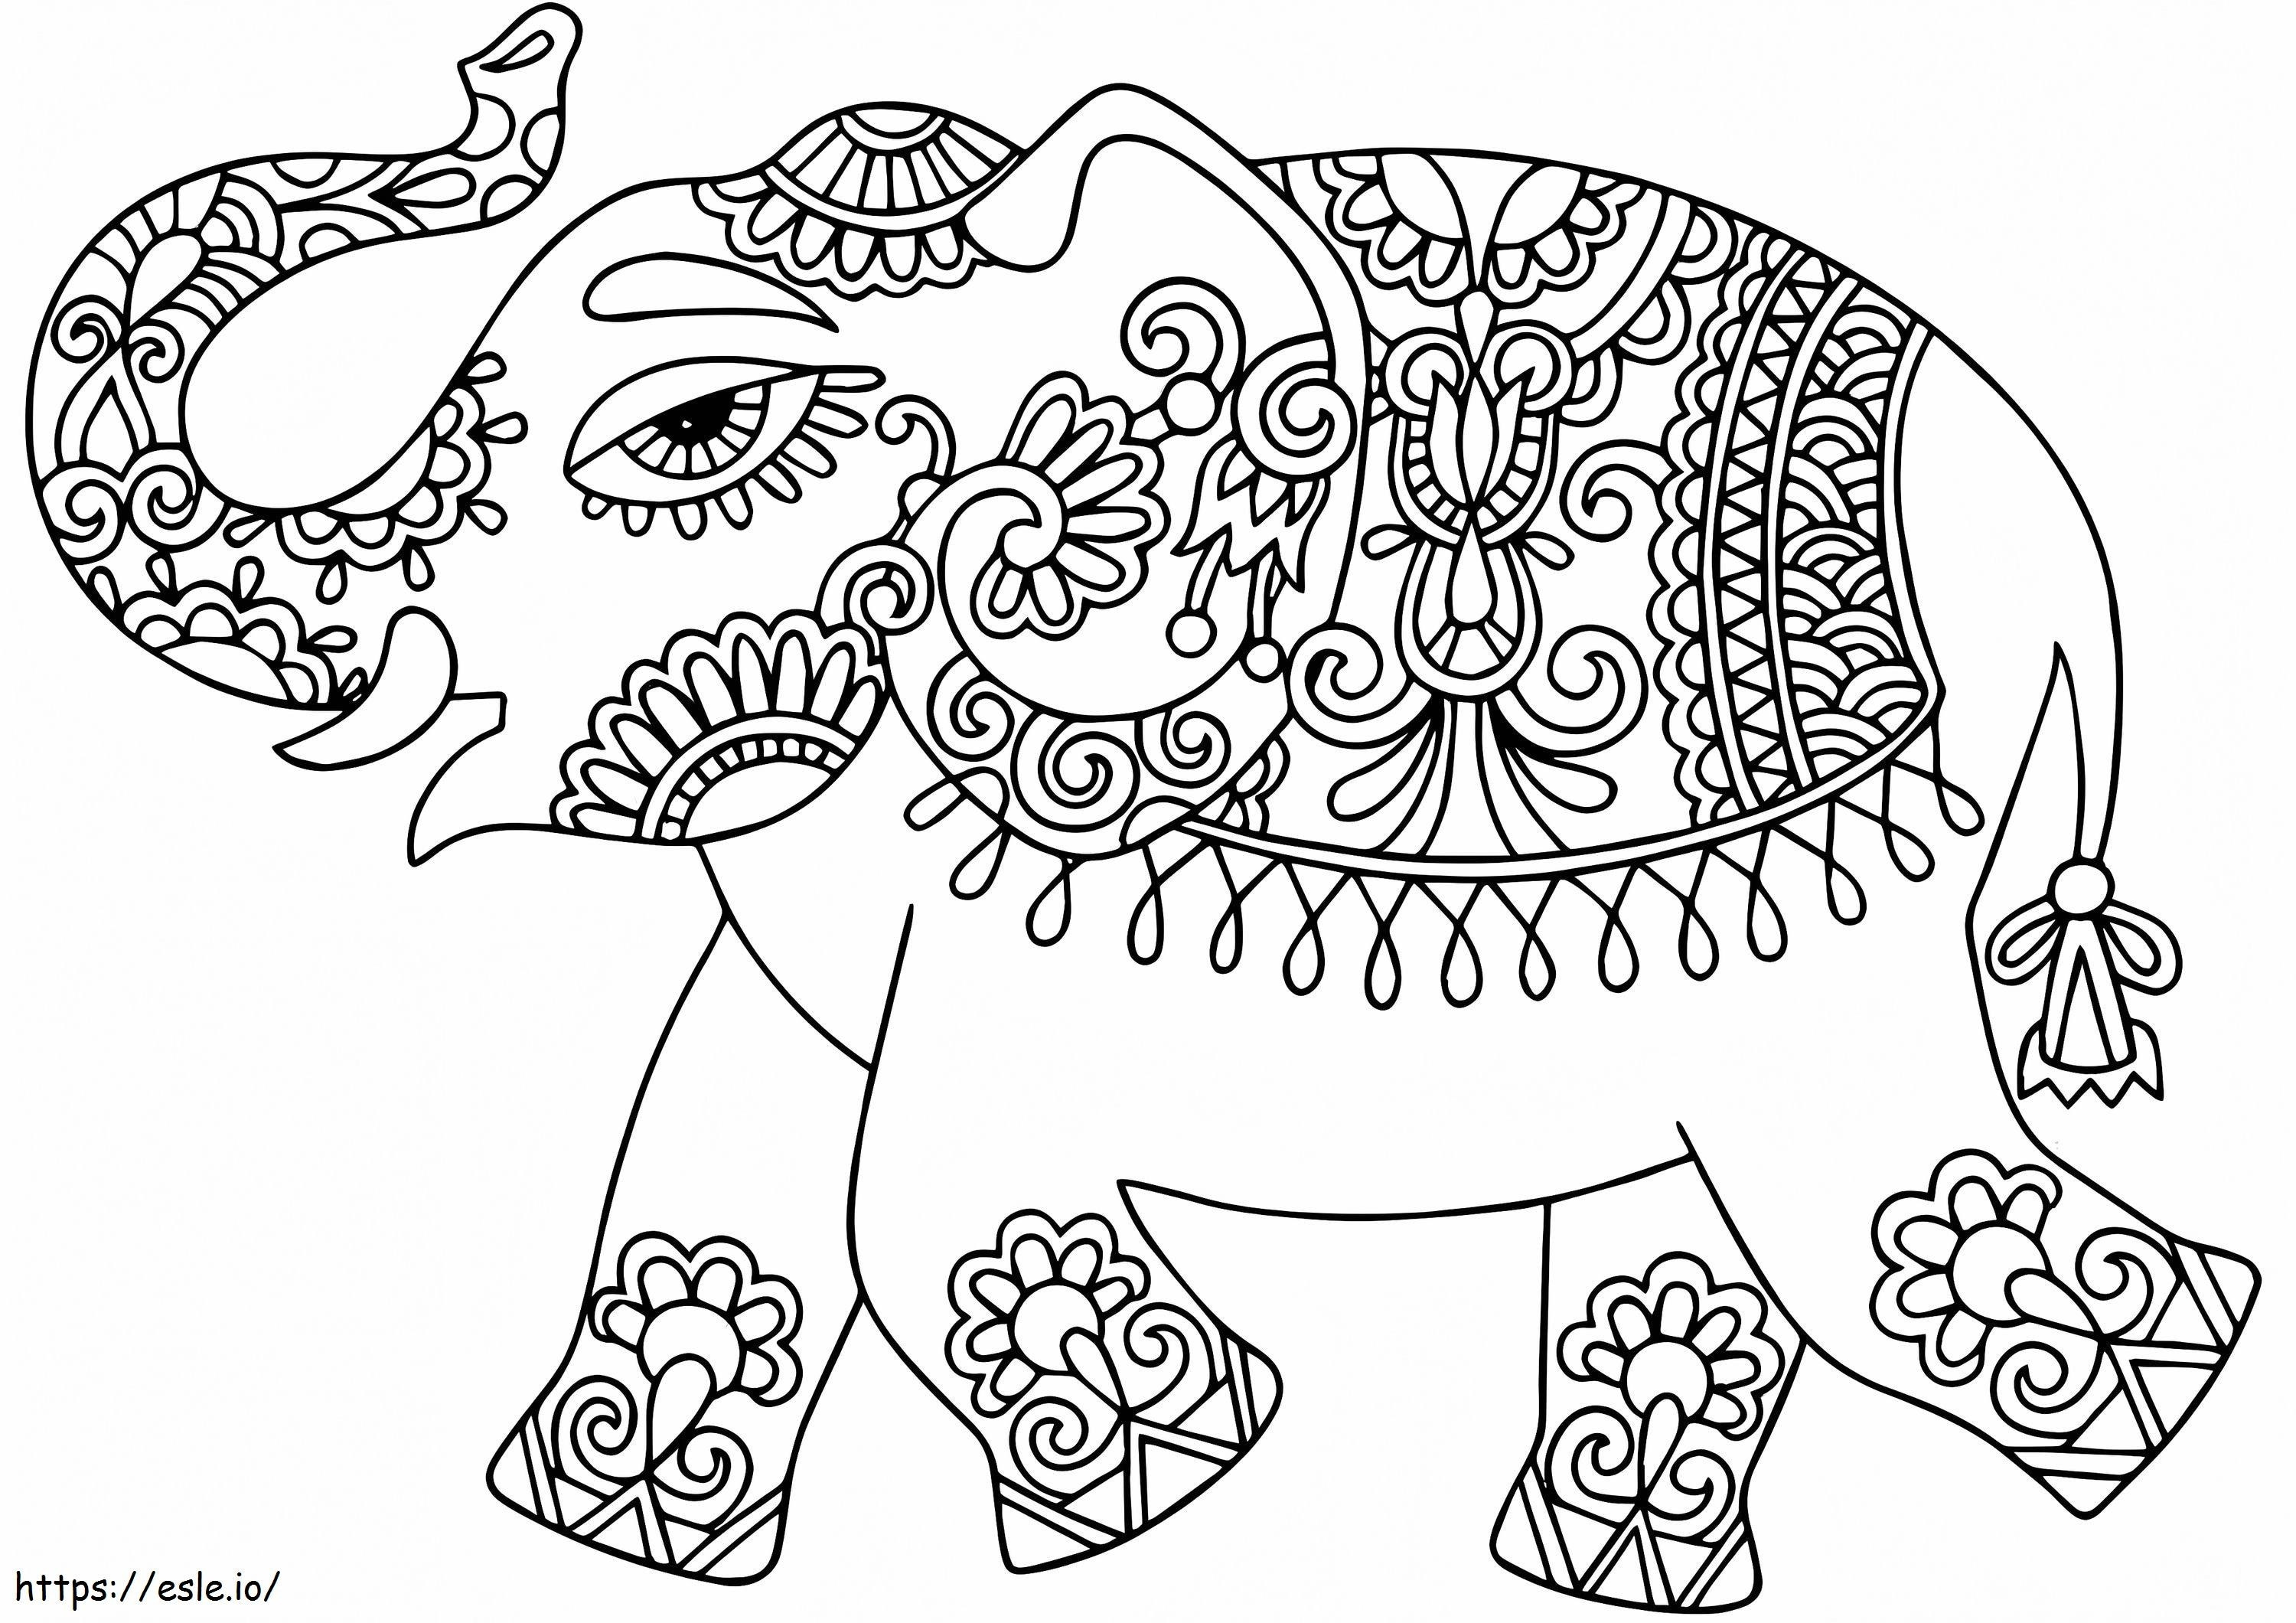 Słoń Z Indiańskimi Wzorami kolorowanka